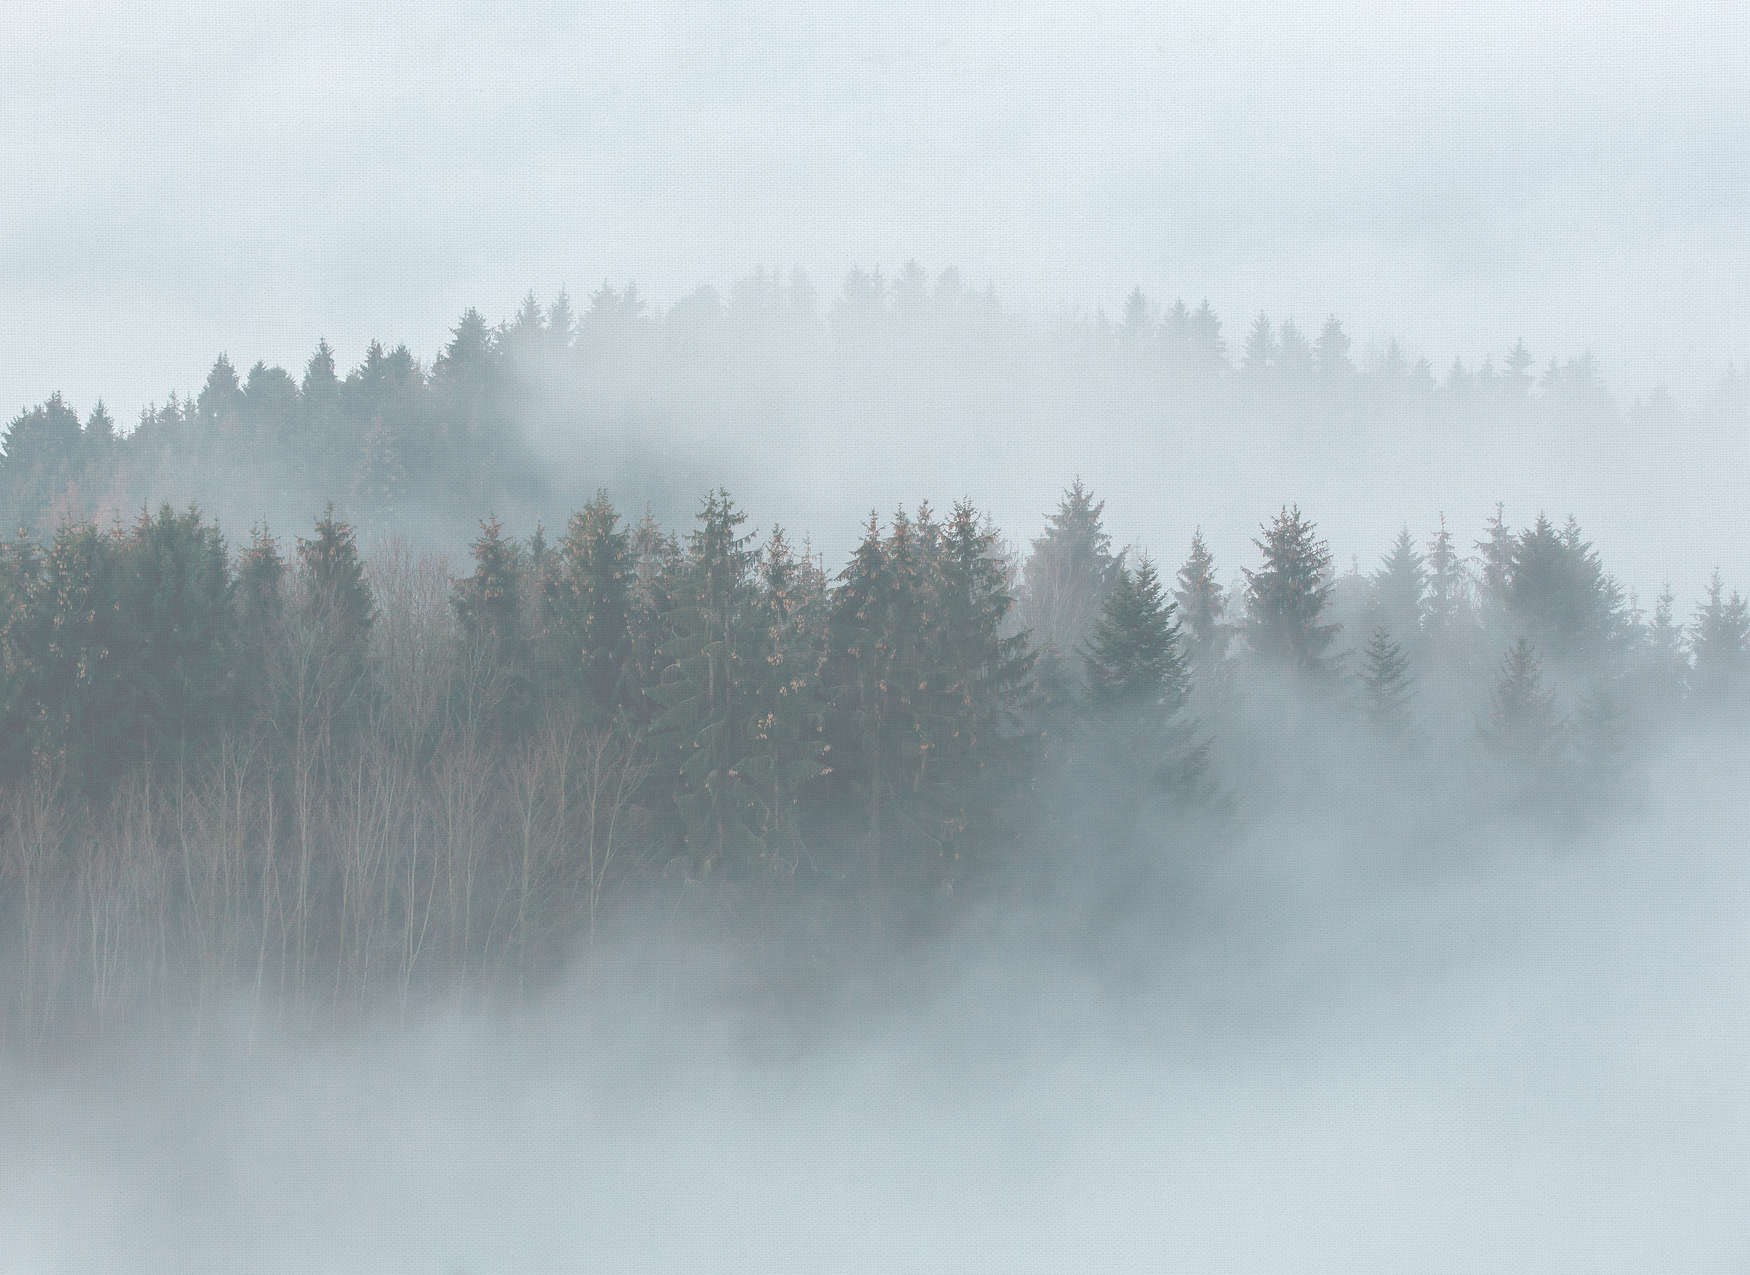             Foresta misteriosa nella nebbia - Bianco, verde, grigio
        